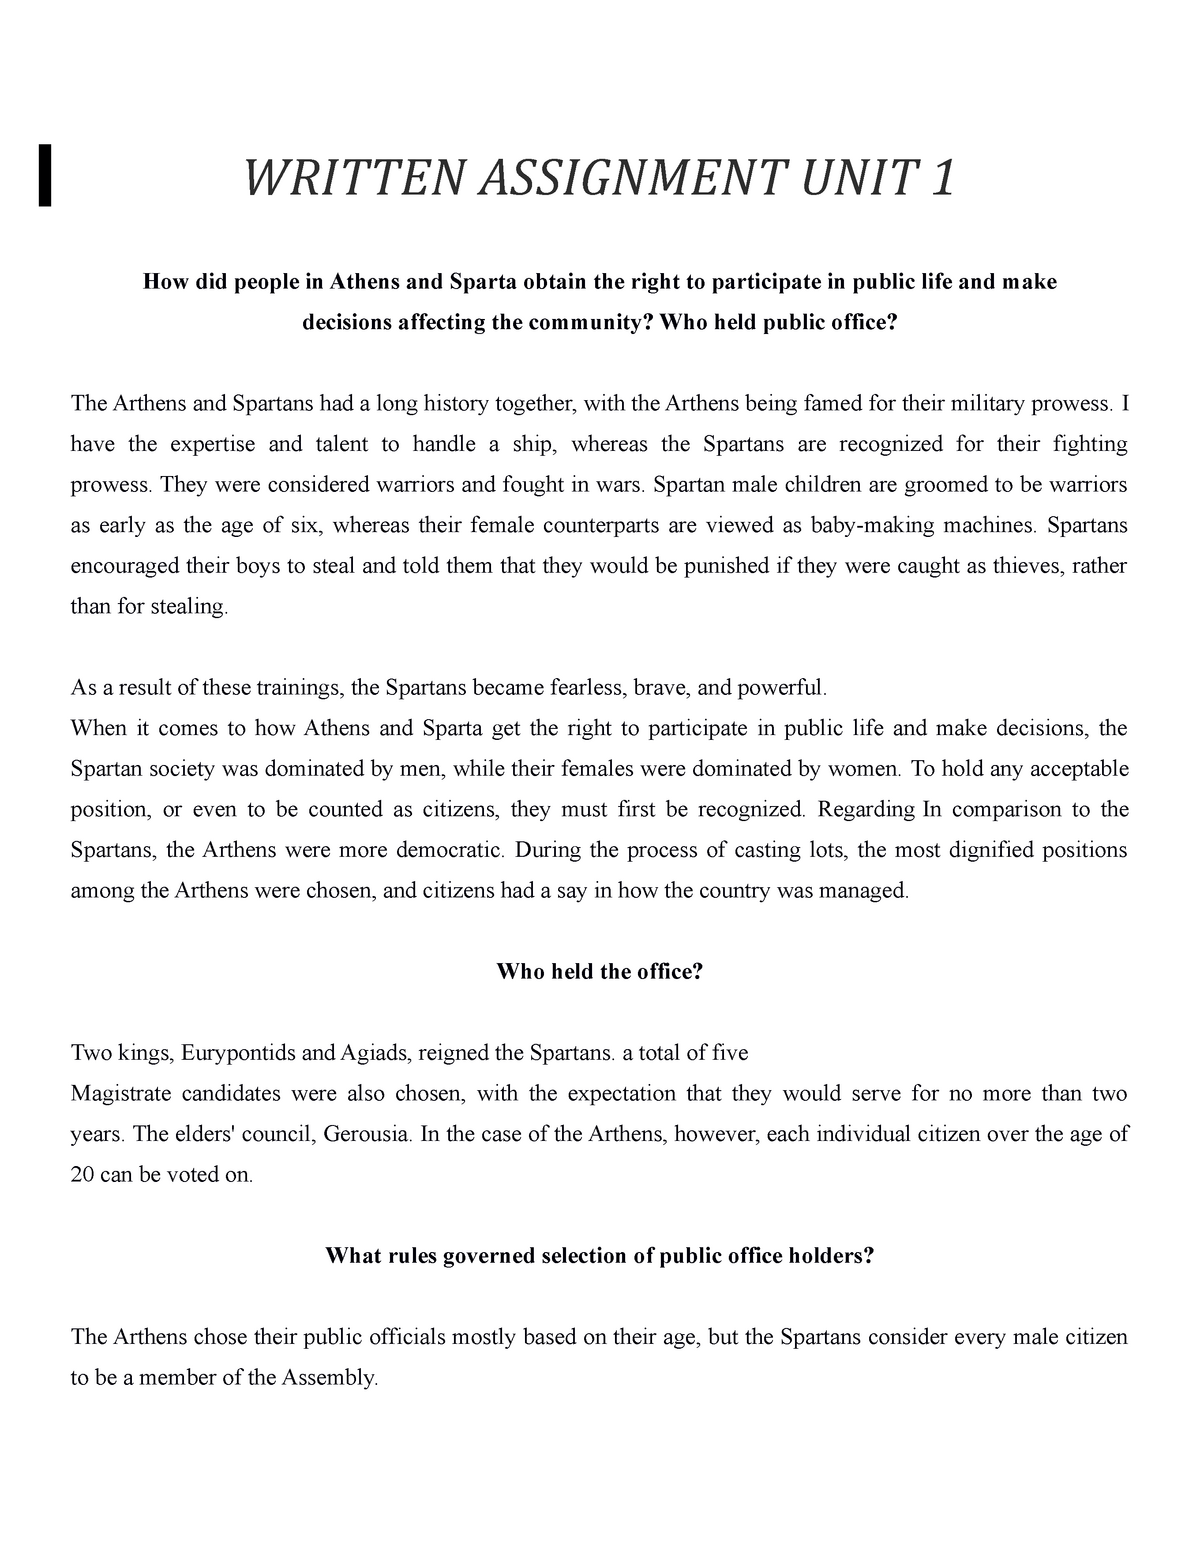 written assignment unit 1 hist 1421